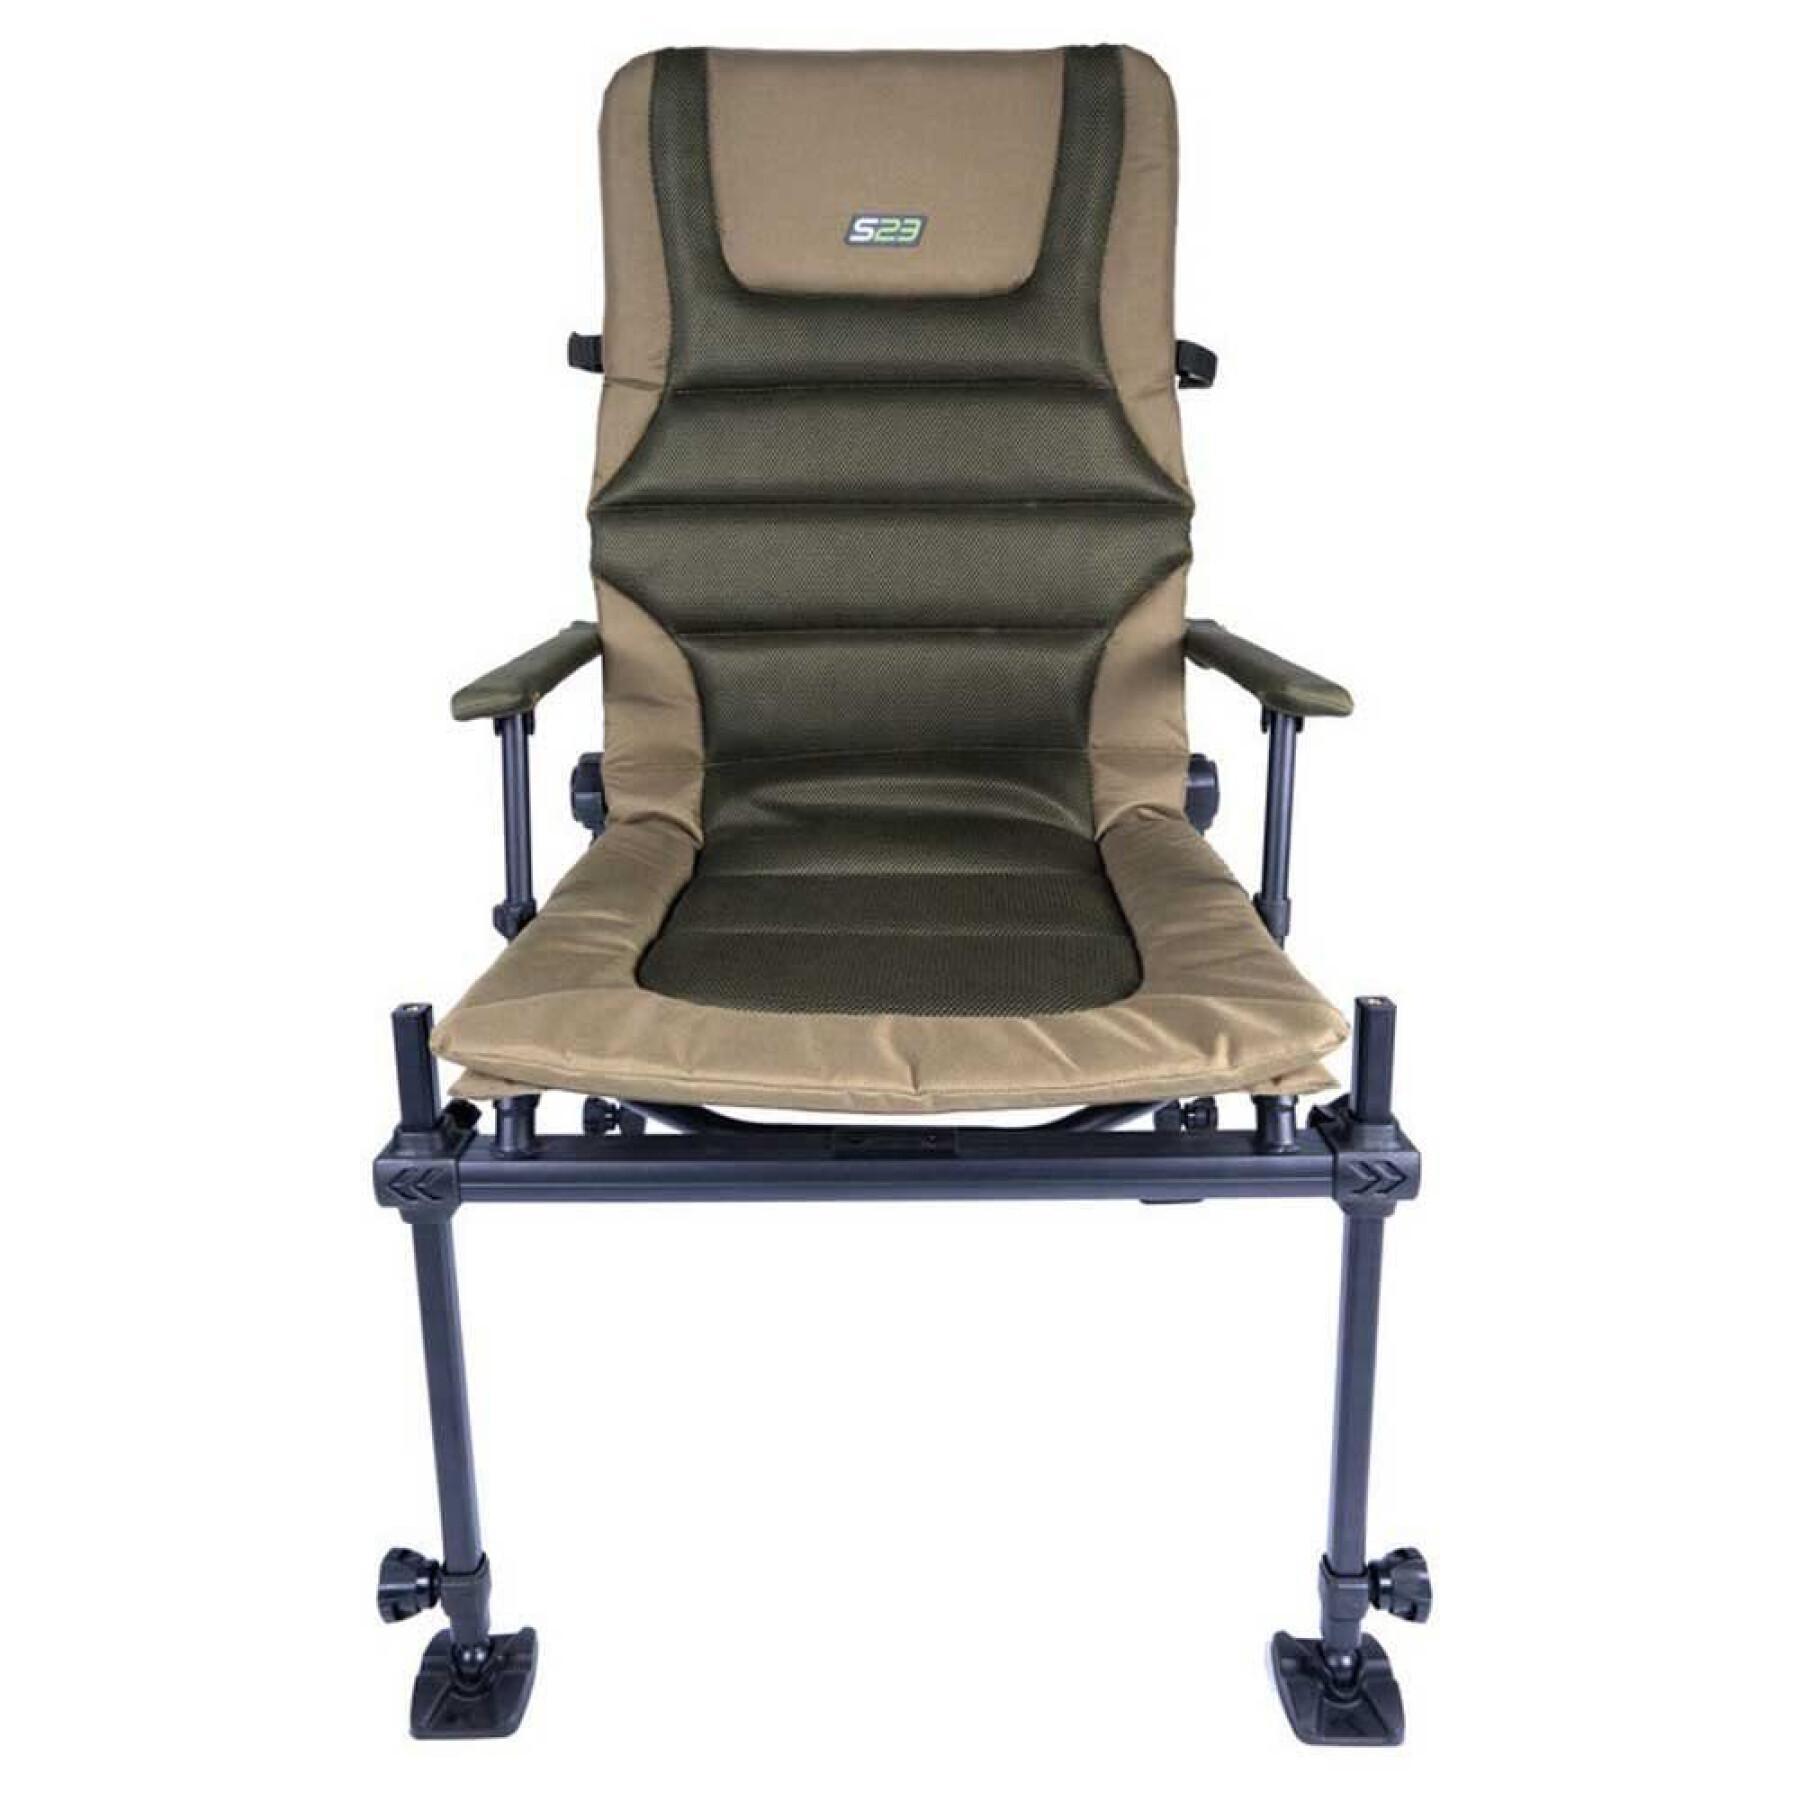 Standardowe krzesła z wyposażeniem dodatkowym Korum S23